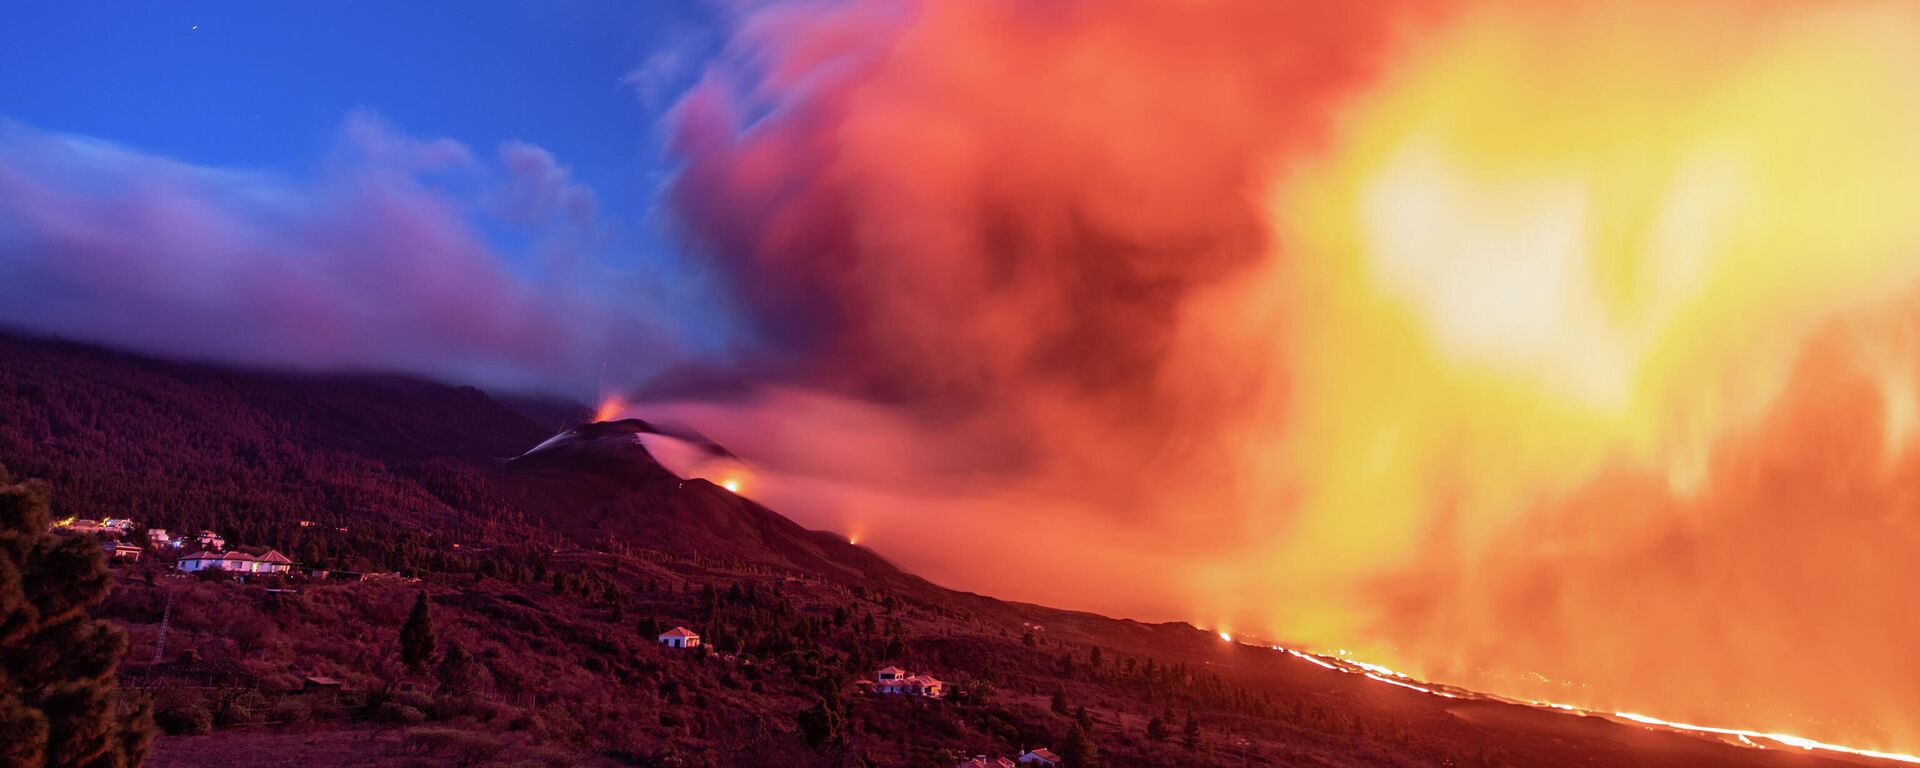 Nube de ceniza y lava que salen del volcán de Cumbre Vieja, a 12 de noviembre de 2021, en Tacande de Abajo, Santa Cruz de Tenerife, Canarias (España) - Sputnik Mundo, 1920, 13.11.2021